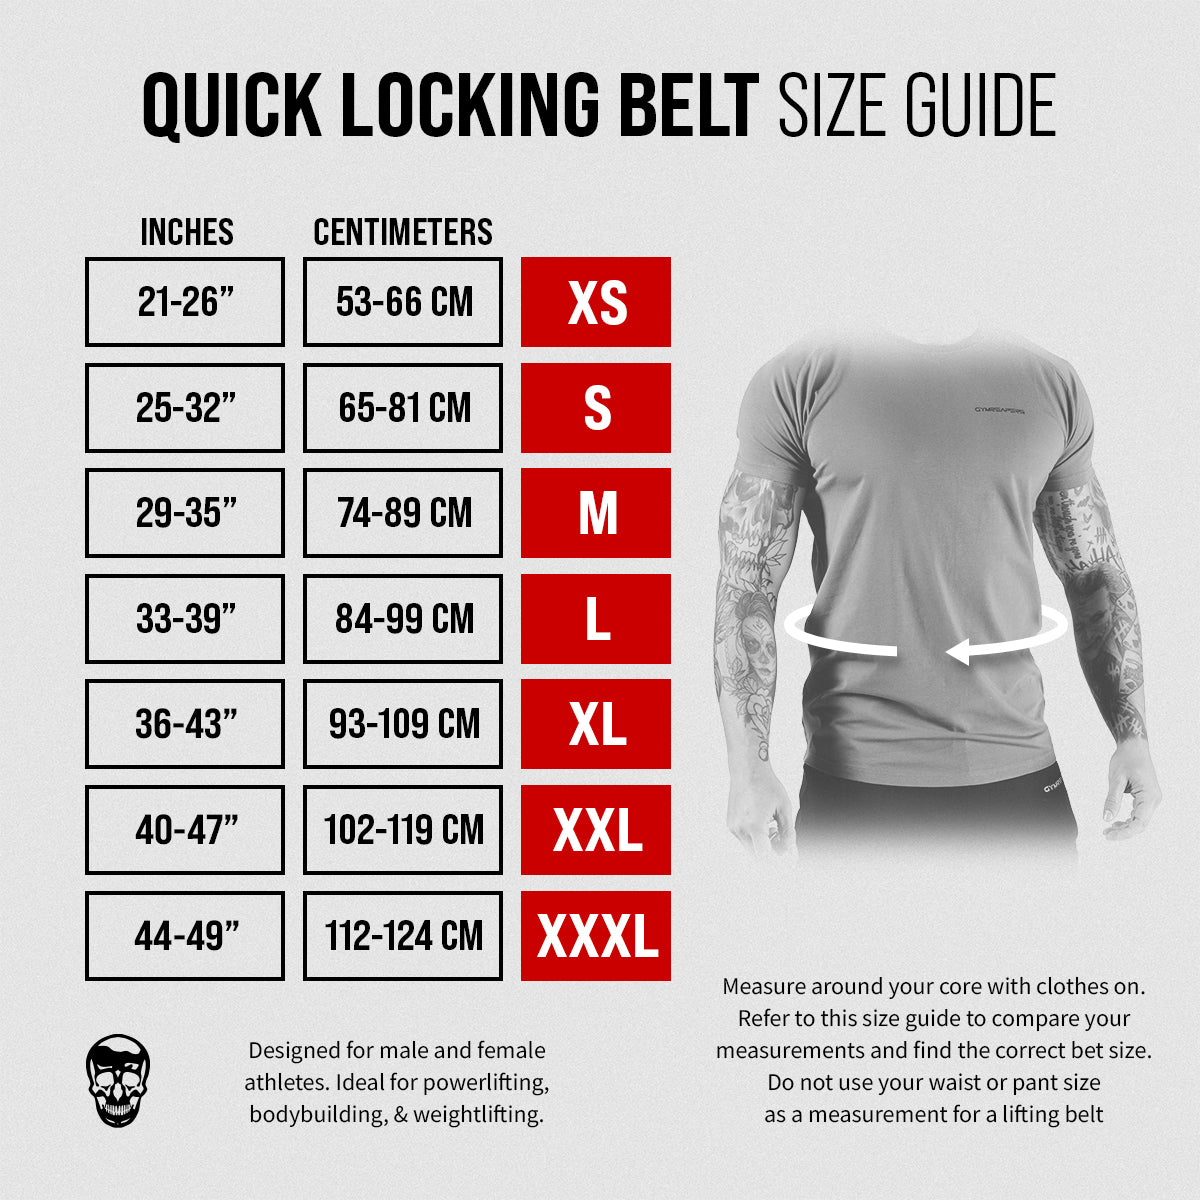 LYFT-RX Quick-Locking Weightlifting Belt - Power Pink